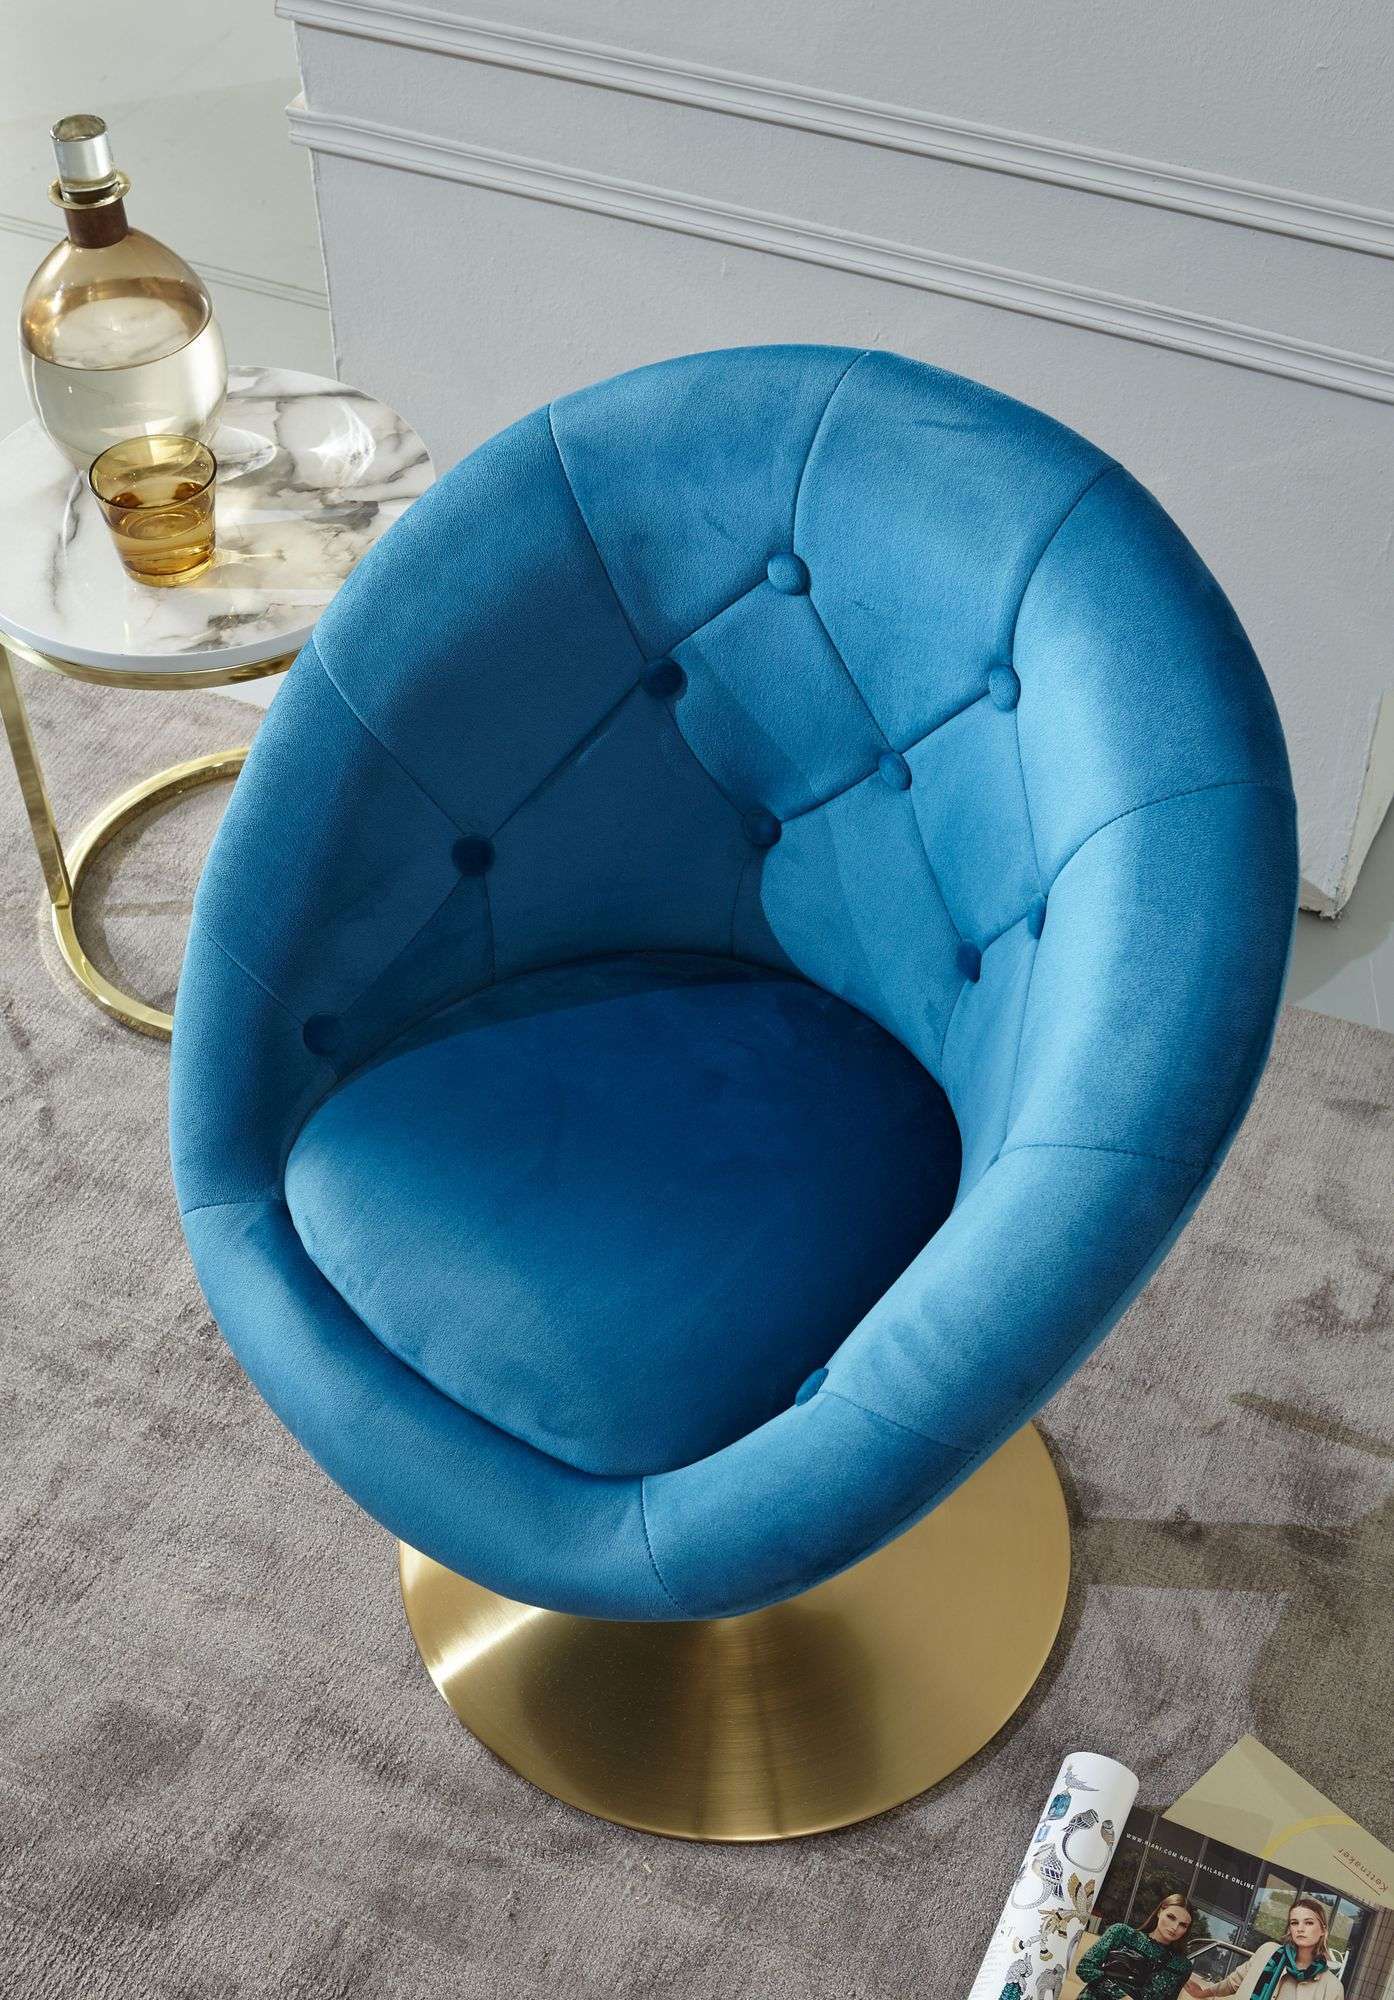 Loungesessel Samt Blau / Gold Design Drehstuhl online kaufen